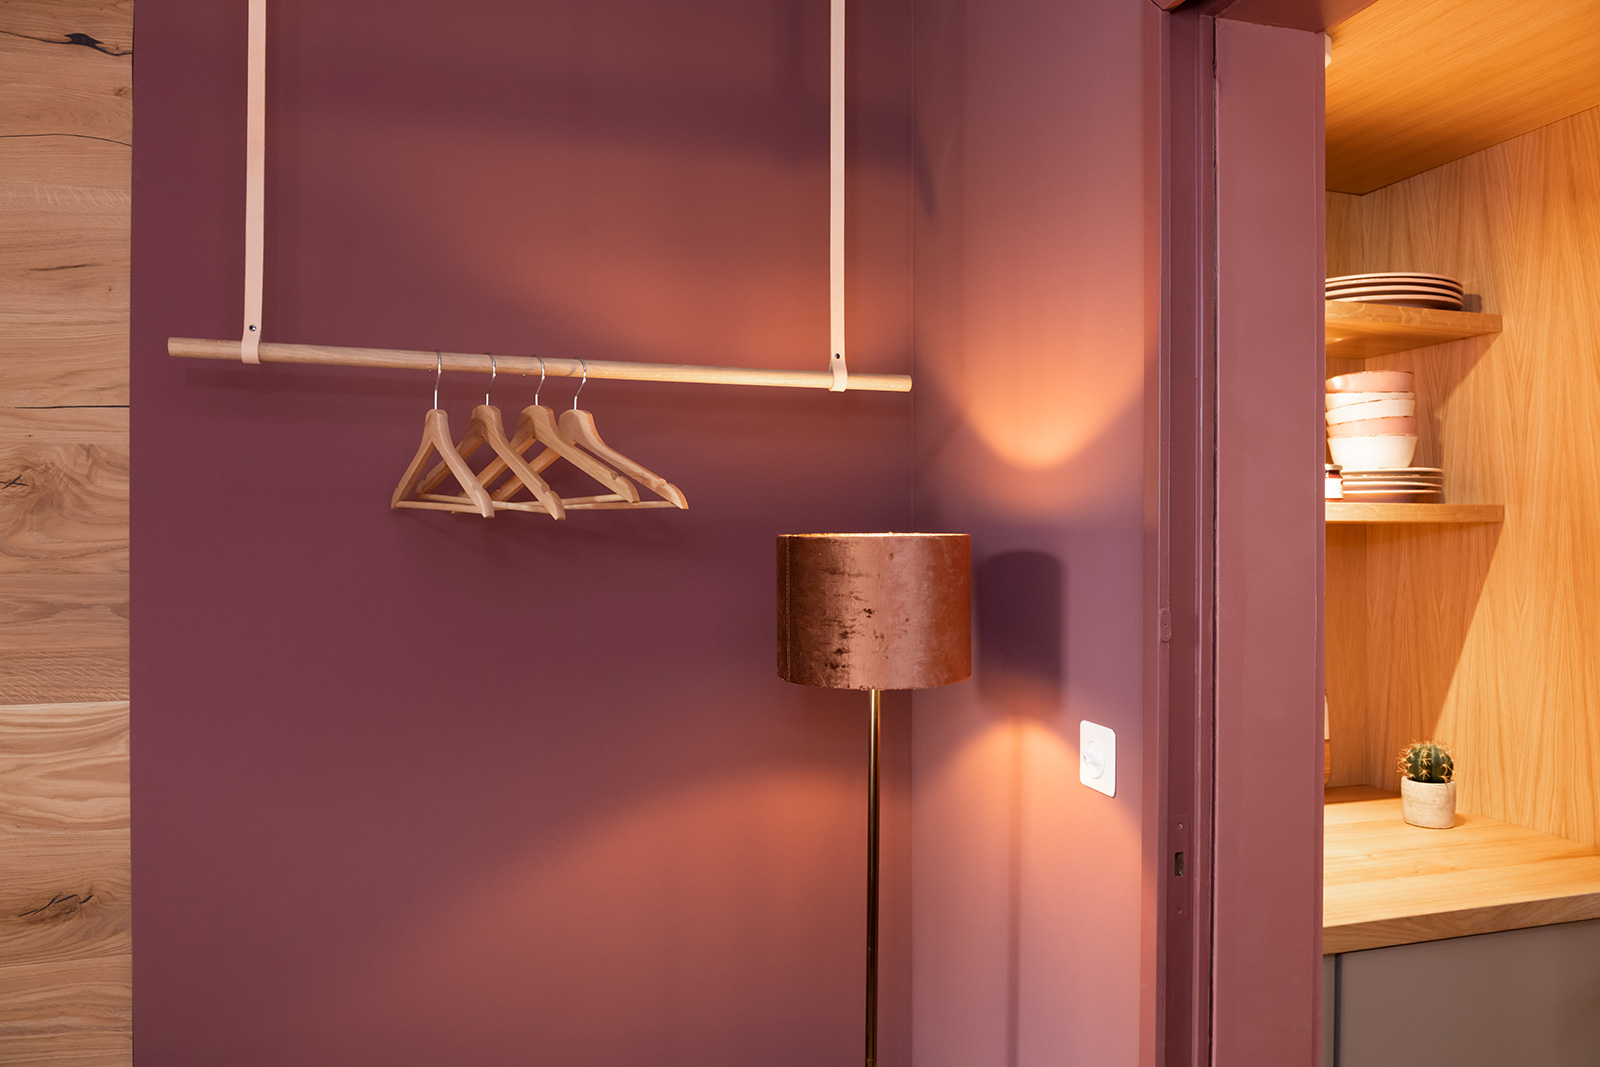 Garderobe: Detail hängende Kleiderstange mit Bügeln und leuchtender Stehlampe